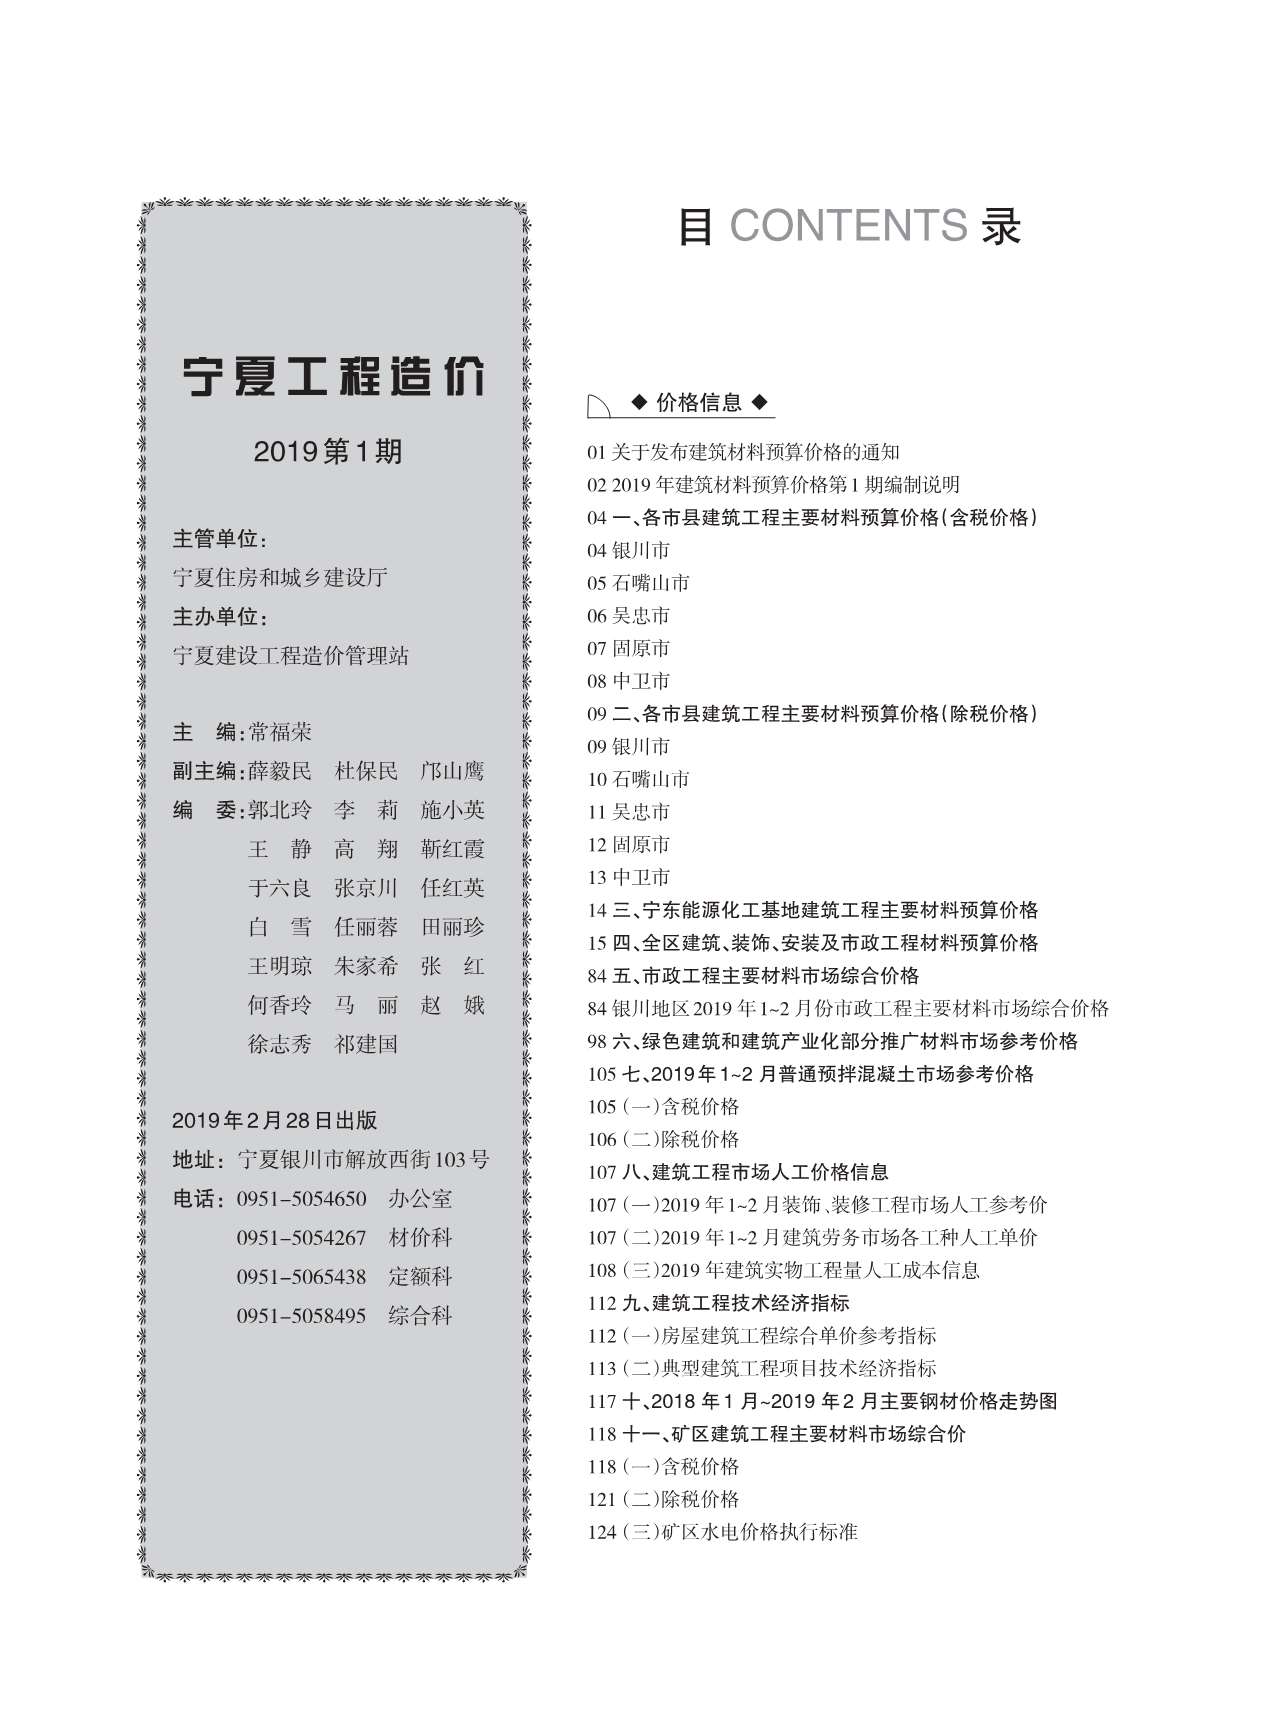 宁夏自治区2019年1月定额信息价